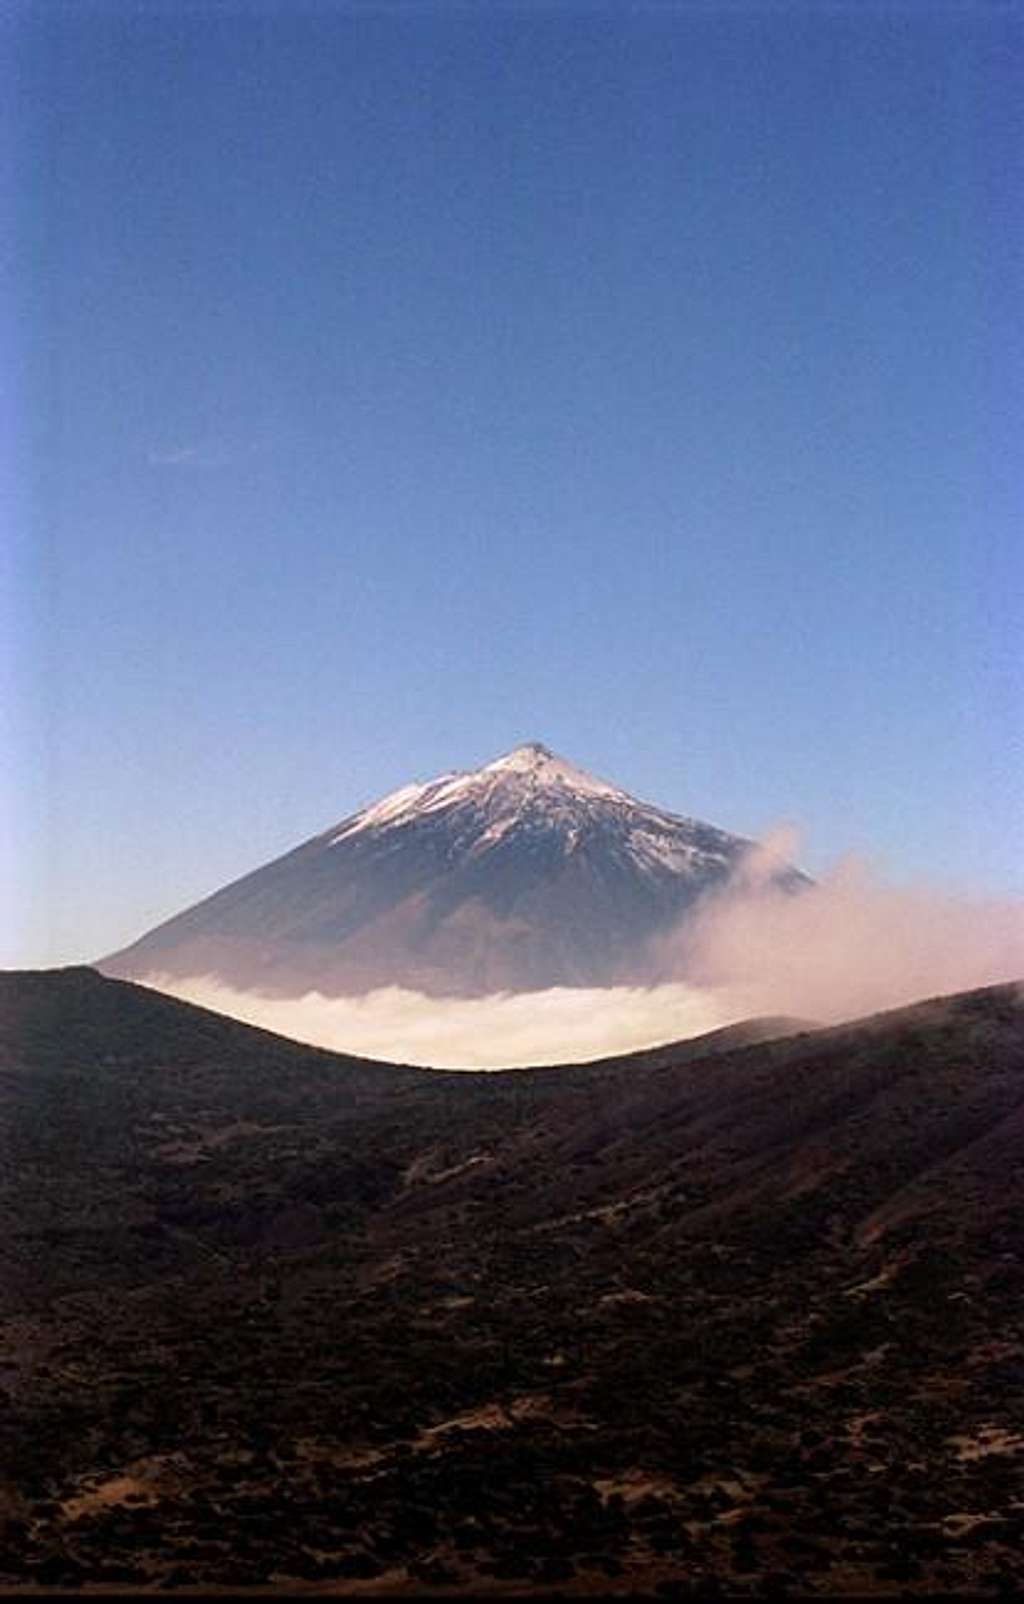 Pico de Teide from Izana...